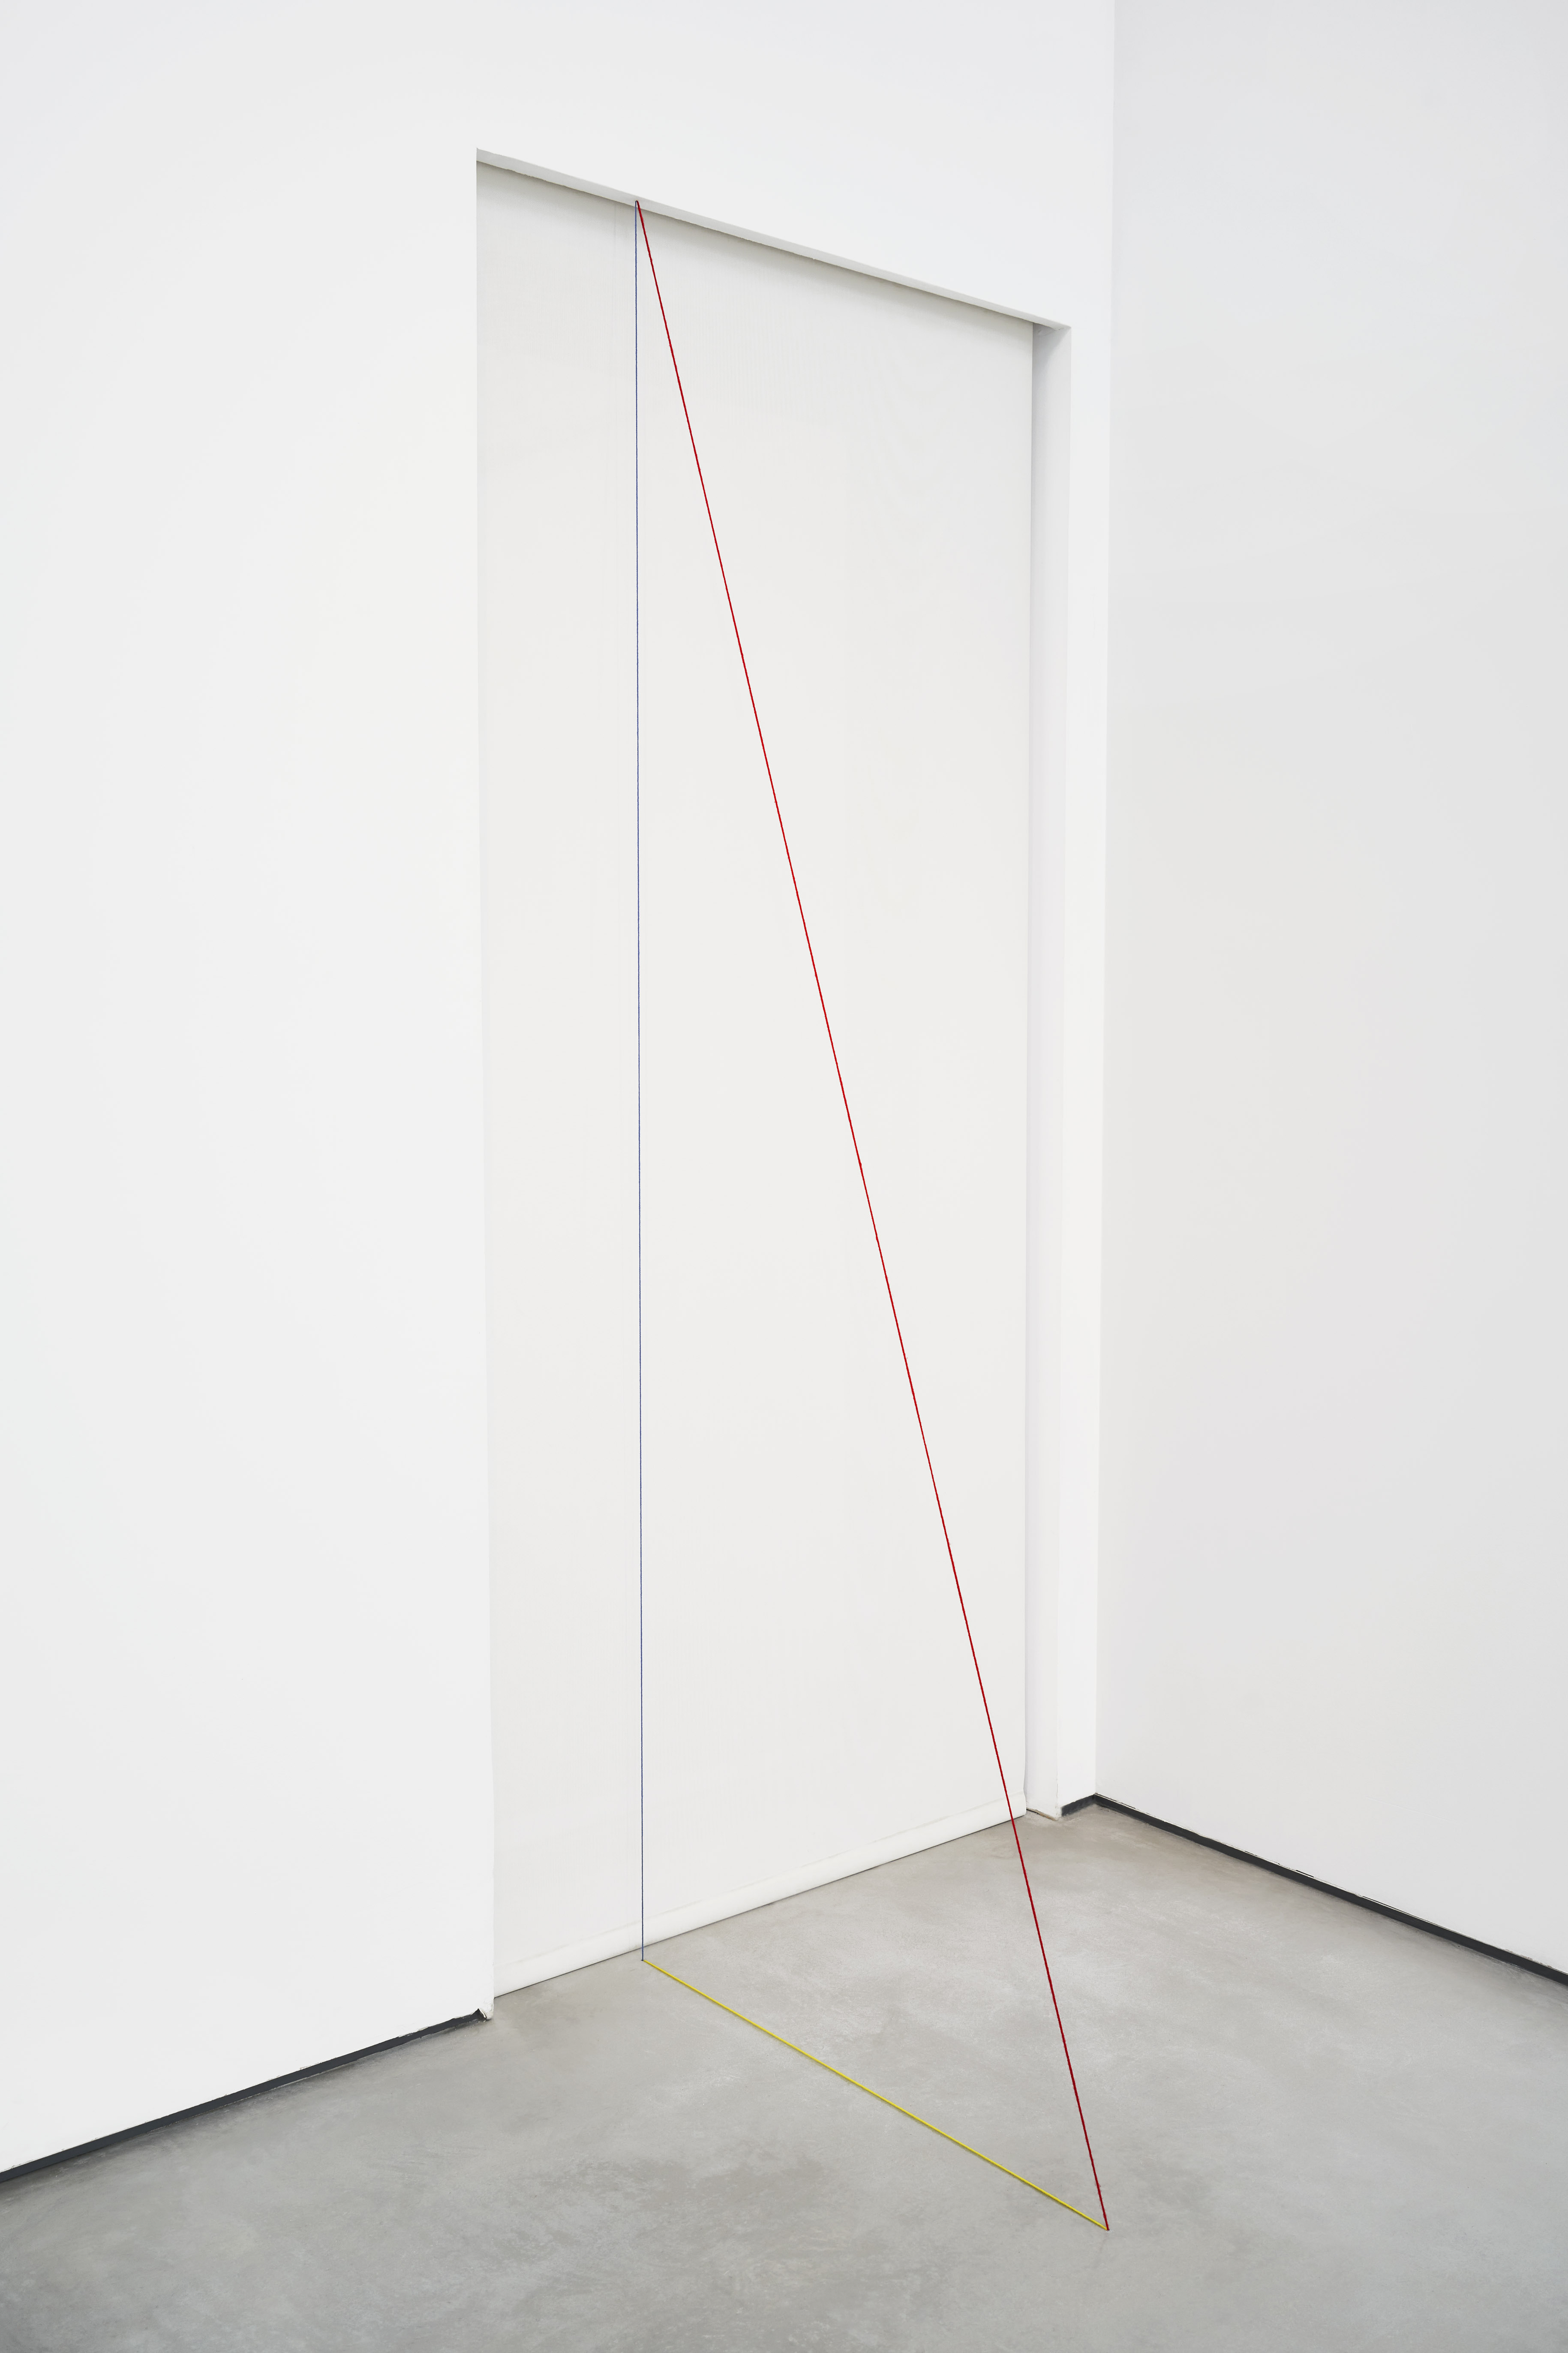 Fred Sandback, Untitled (Sculptural Study, Vertical Triangle), 1988/2020. Dimensiones: Relaciones espaciales establecidas por el artista; las dimensiones totales varían con cada instalación.